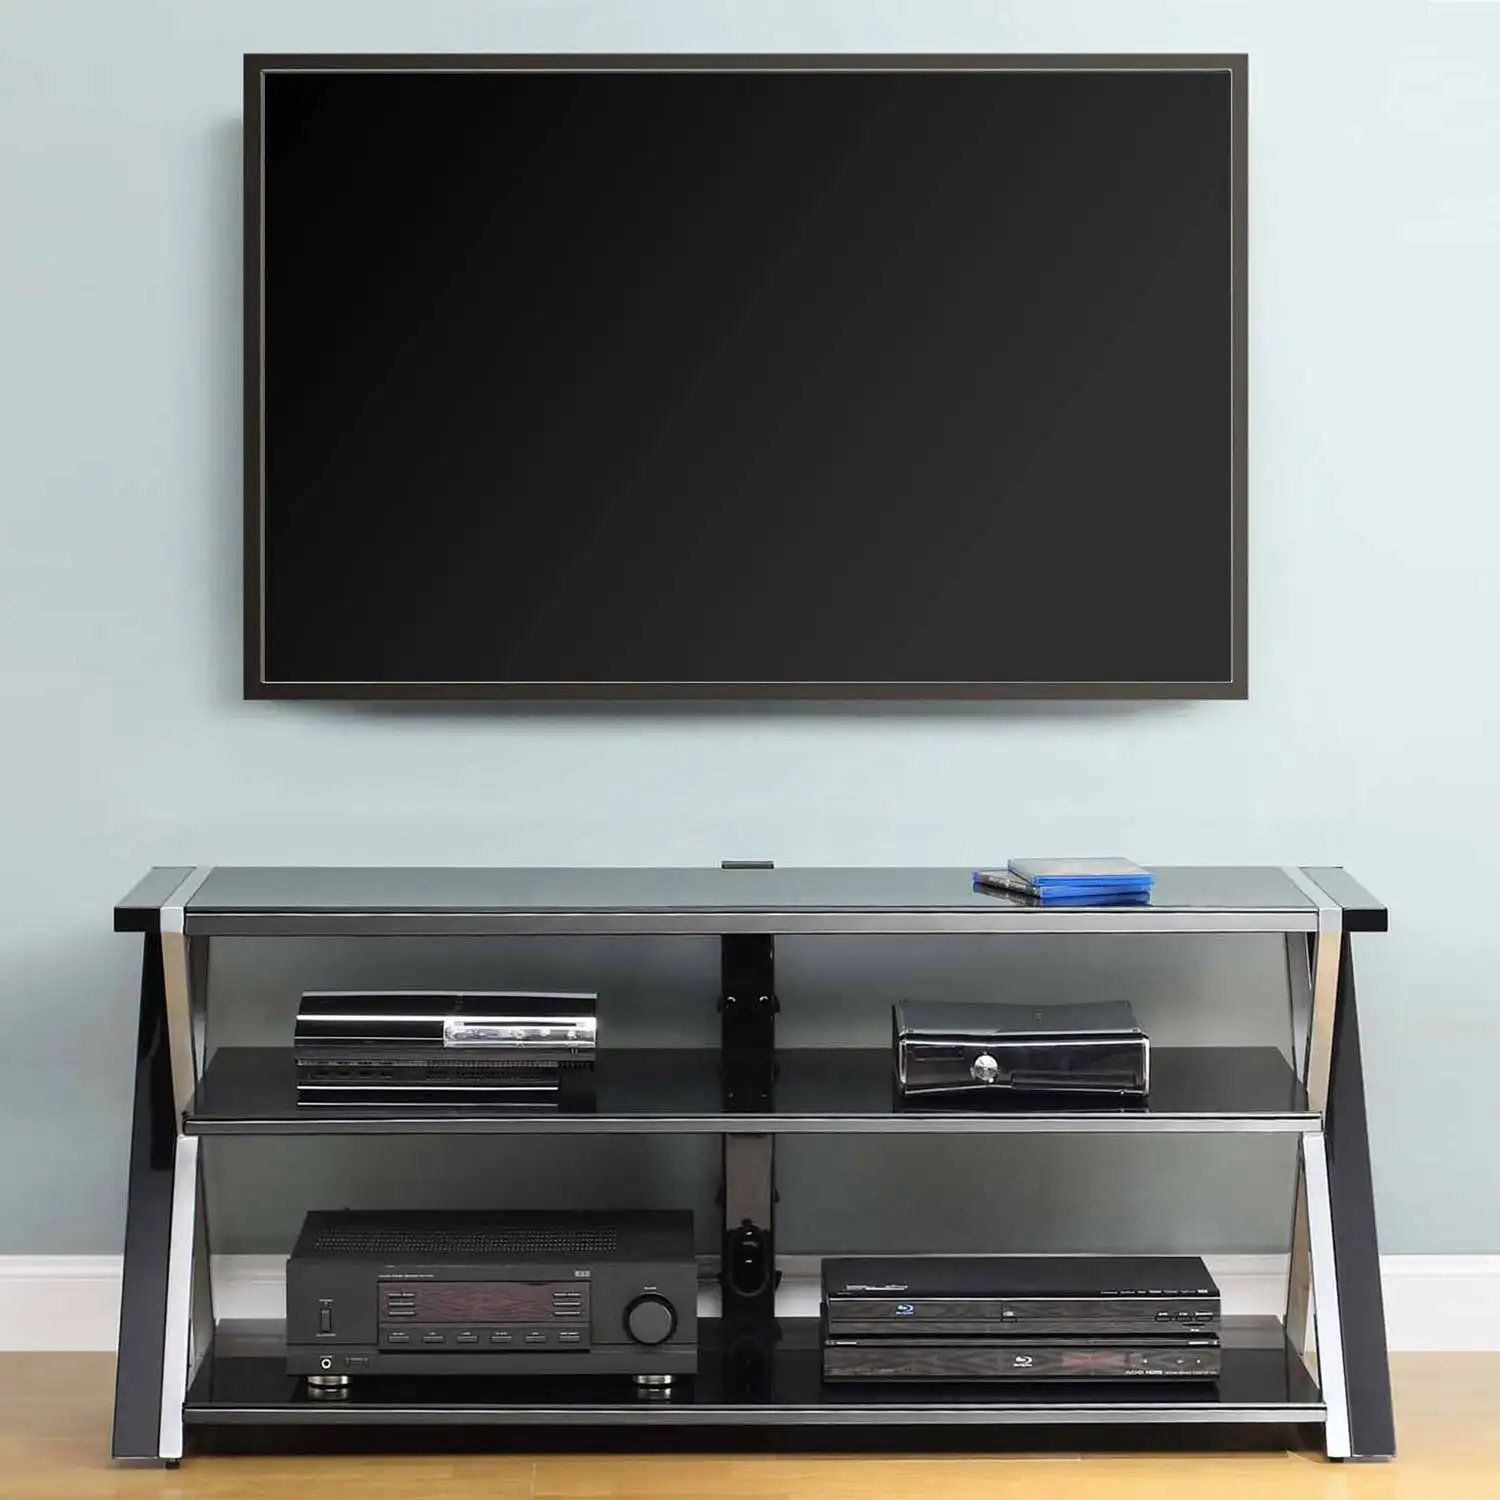 

Черная подставка для телевизоров с плоским экраном 60 дюймов и полками из закаленного стекла